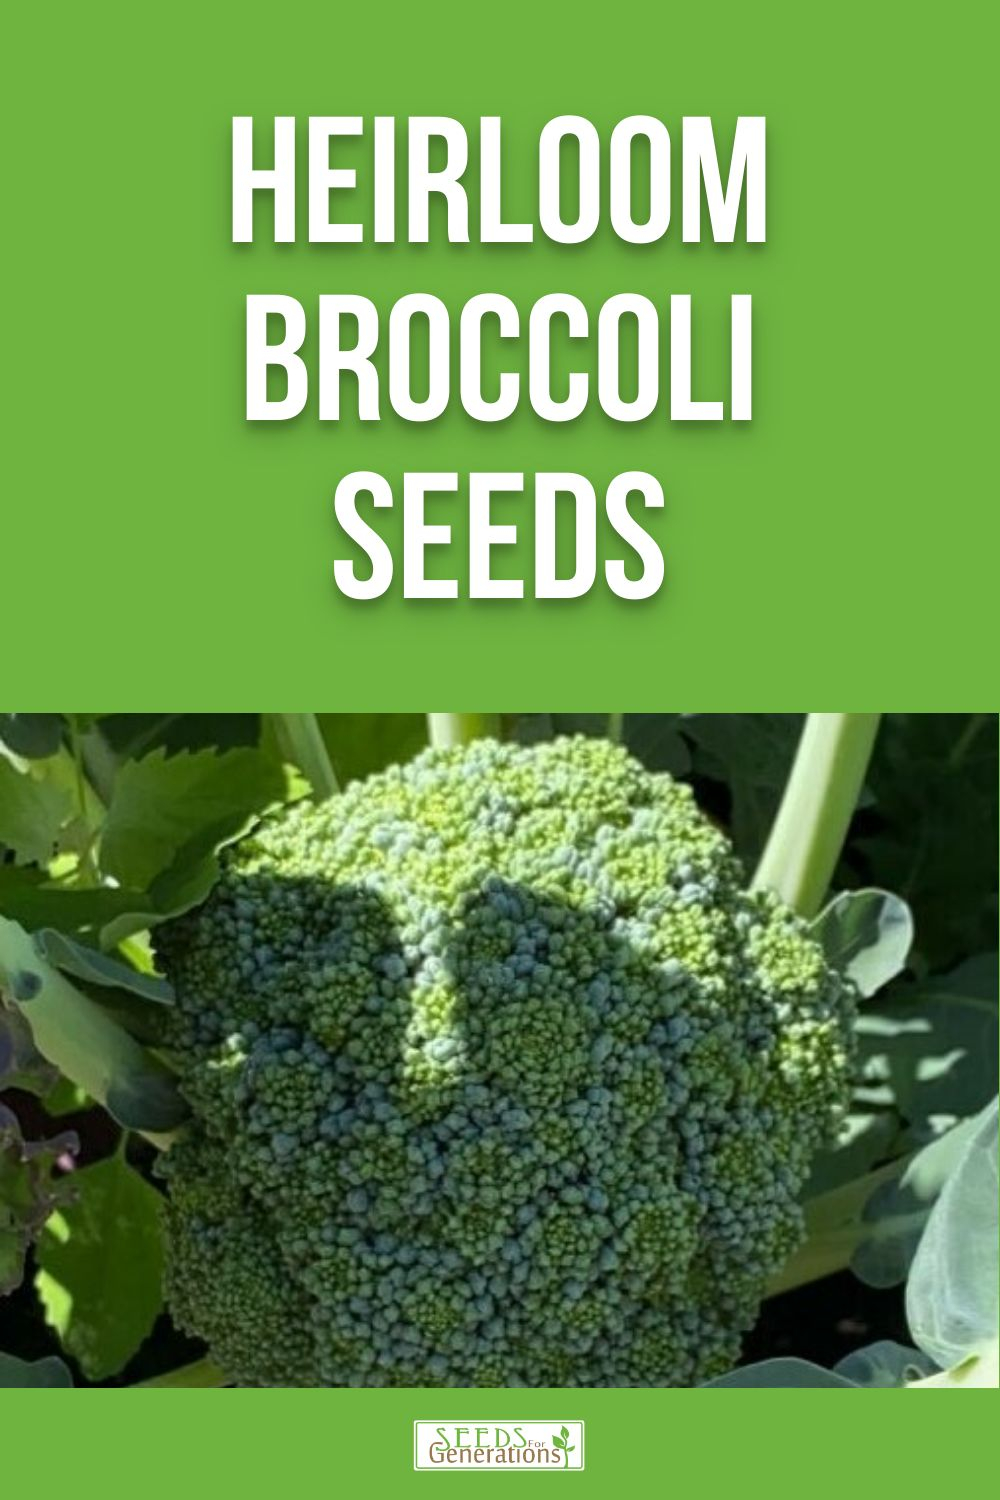 Heirloom Broccoli Seeds for growing in your garden. 